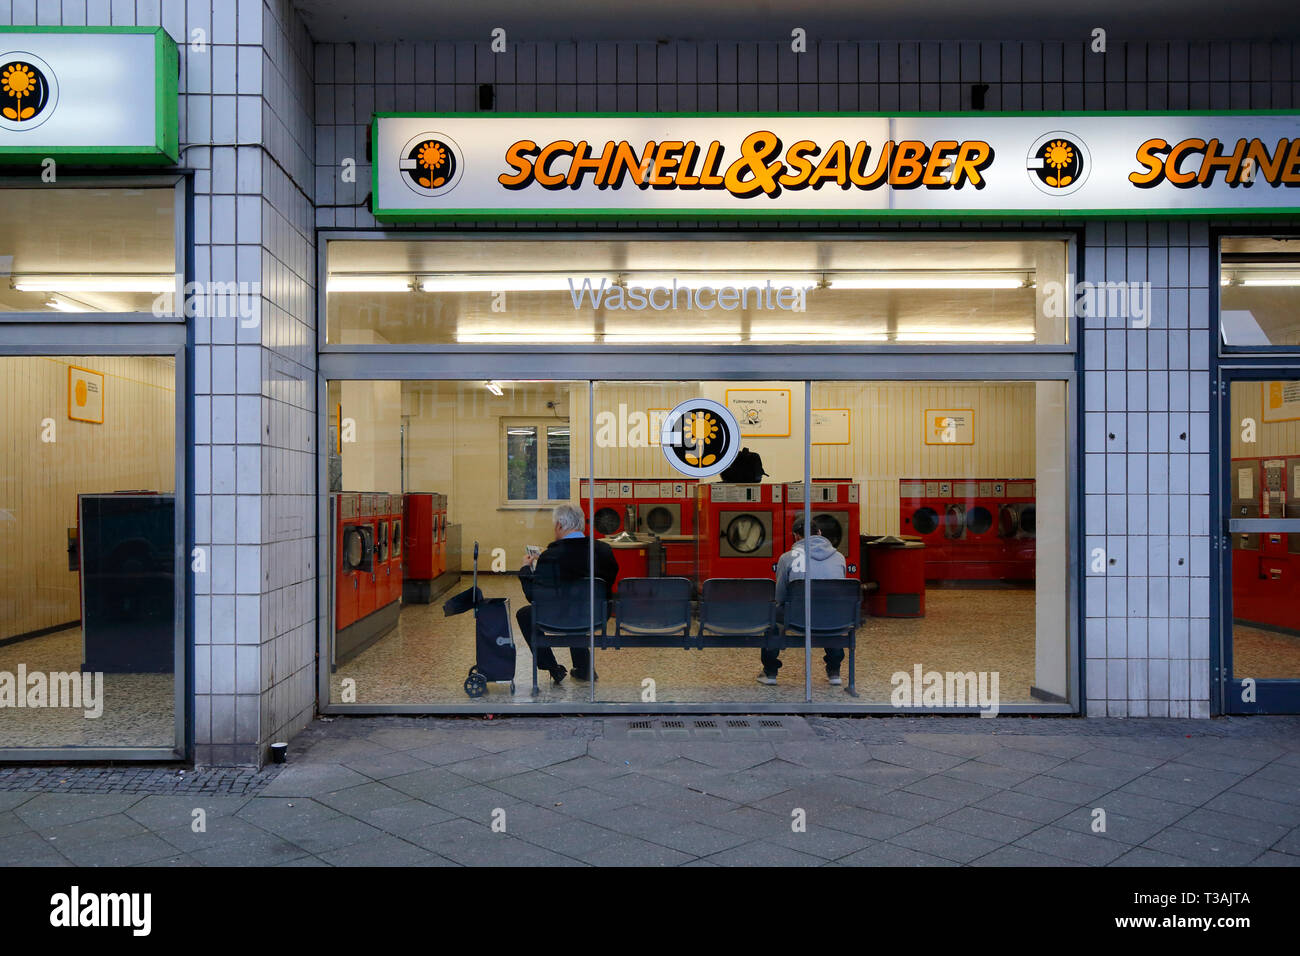 Schnell & Sauber Waschcenter, Berlino, Germania. esterna di una lavanderia a gettoni. Foto Stock